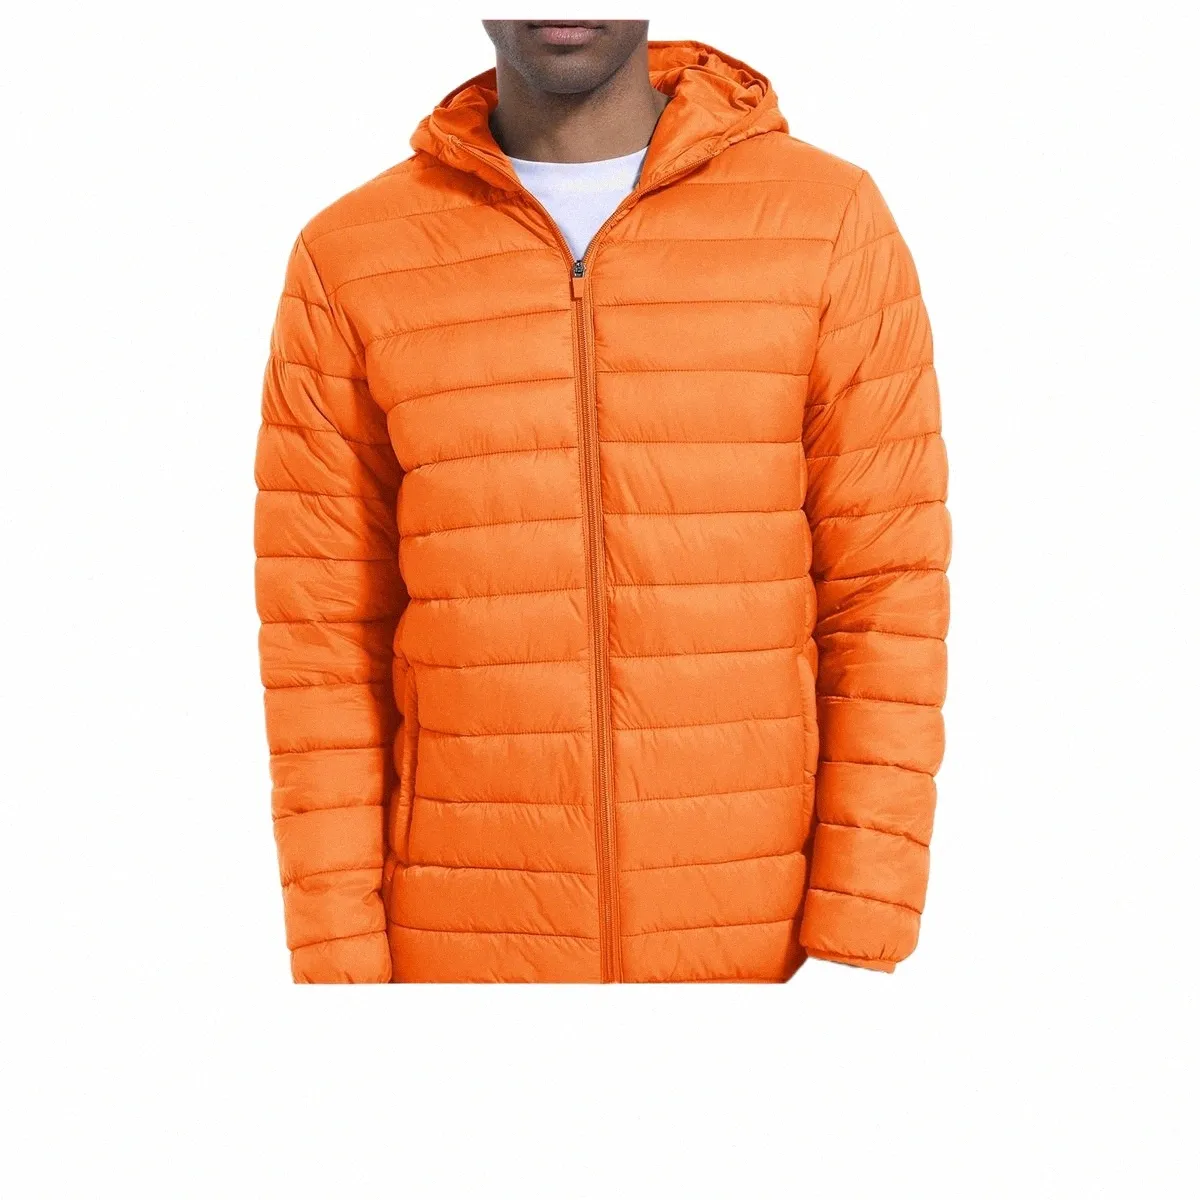 Jackets leves masculinos de magcomsen com capuz com capuz com capa com térmica casual resistente à água, casacos térmicos de inverno forrados 02yy#